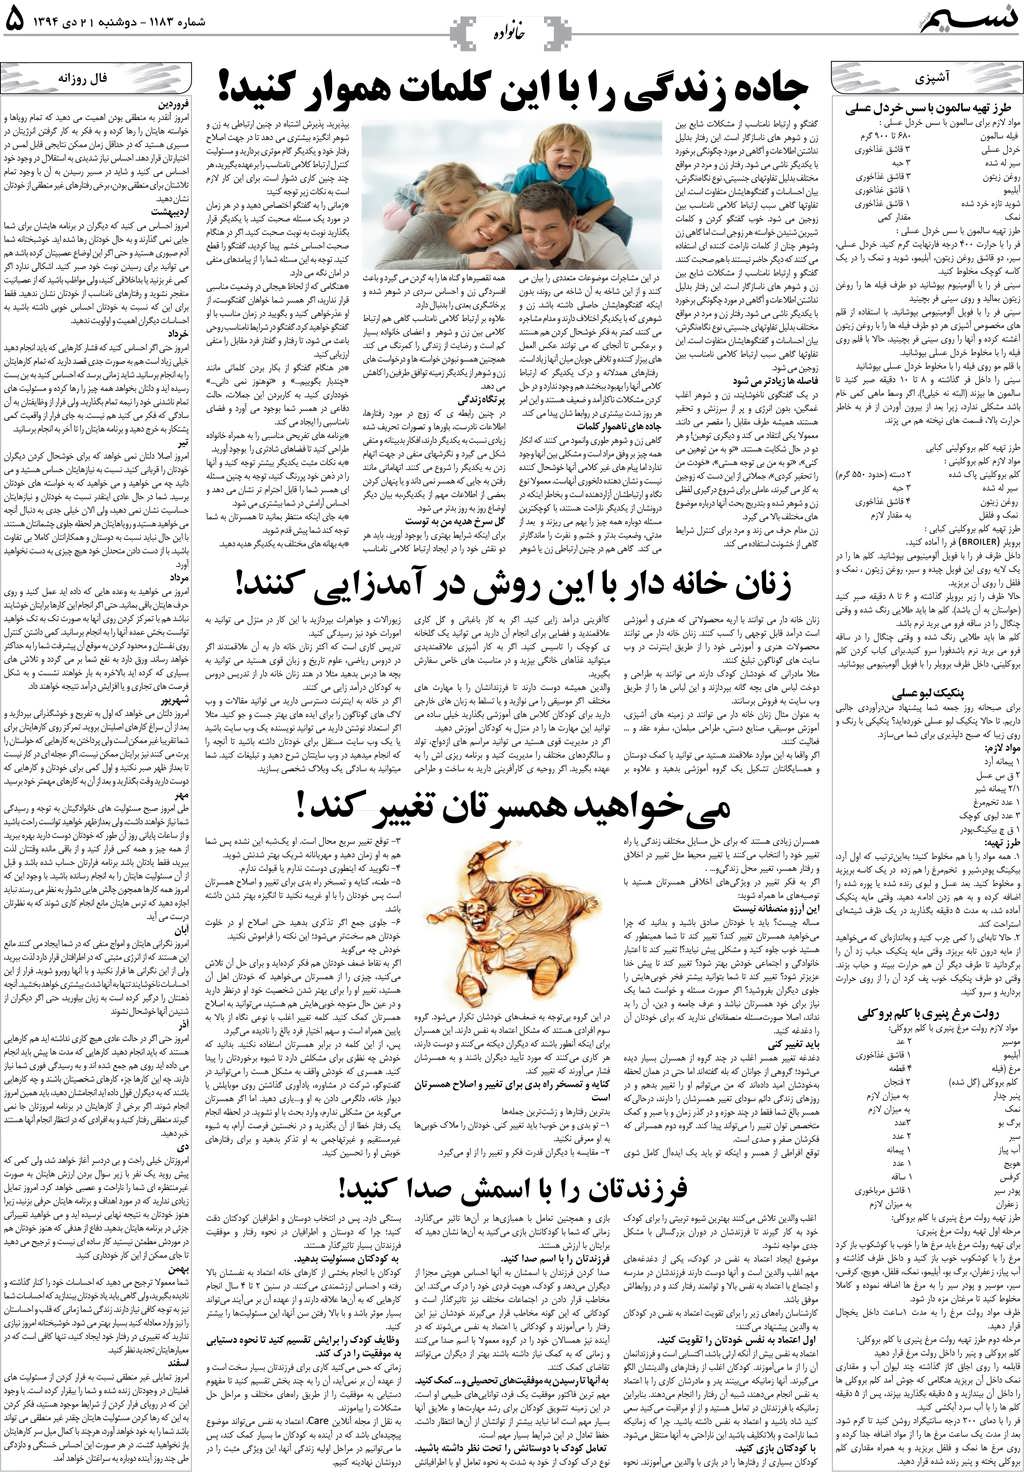 صفحه خانواده روزنامه نسیم شماره 1183